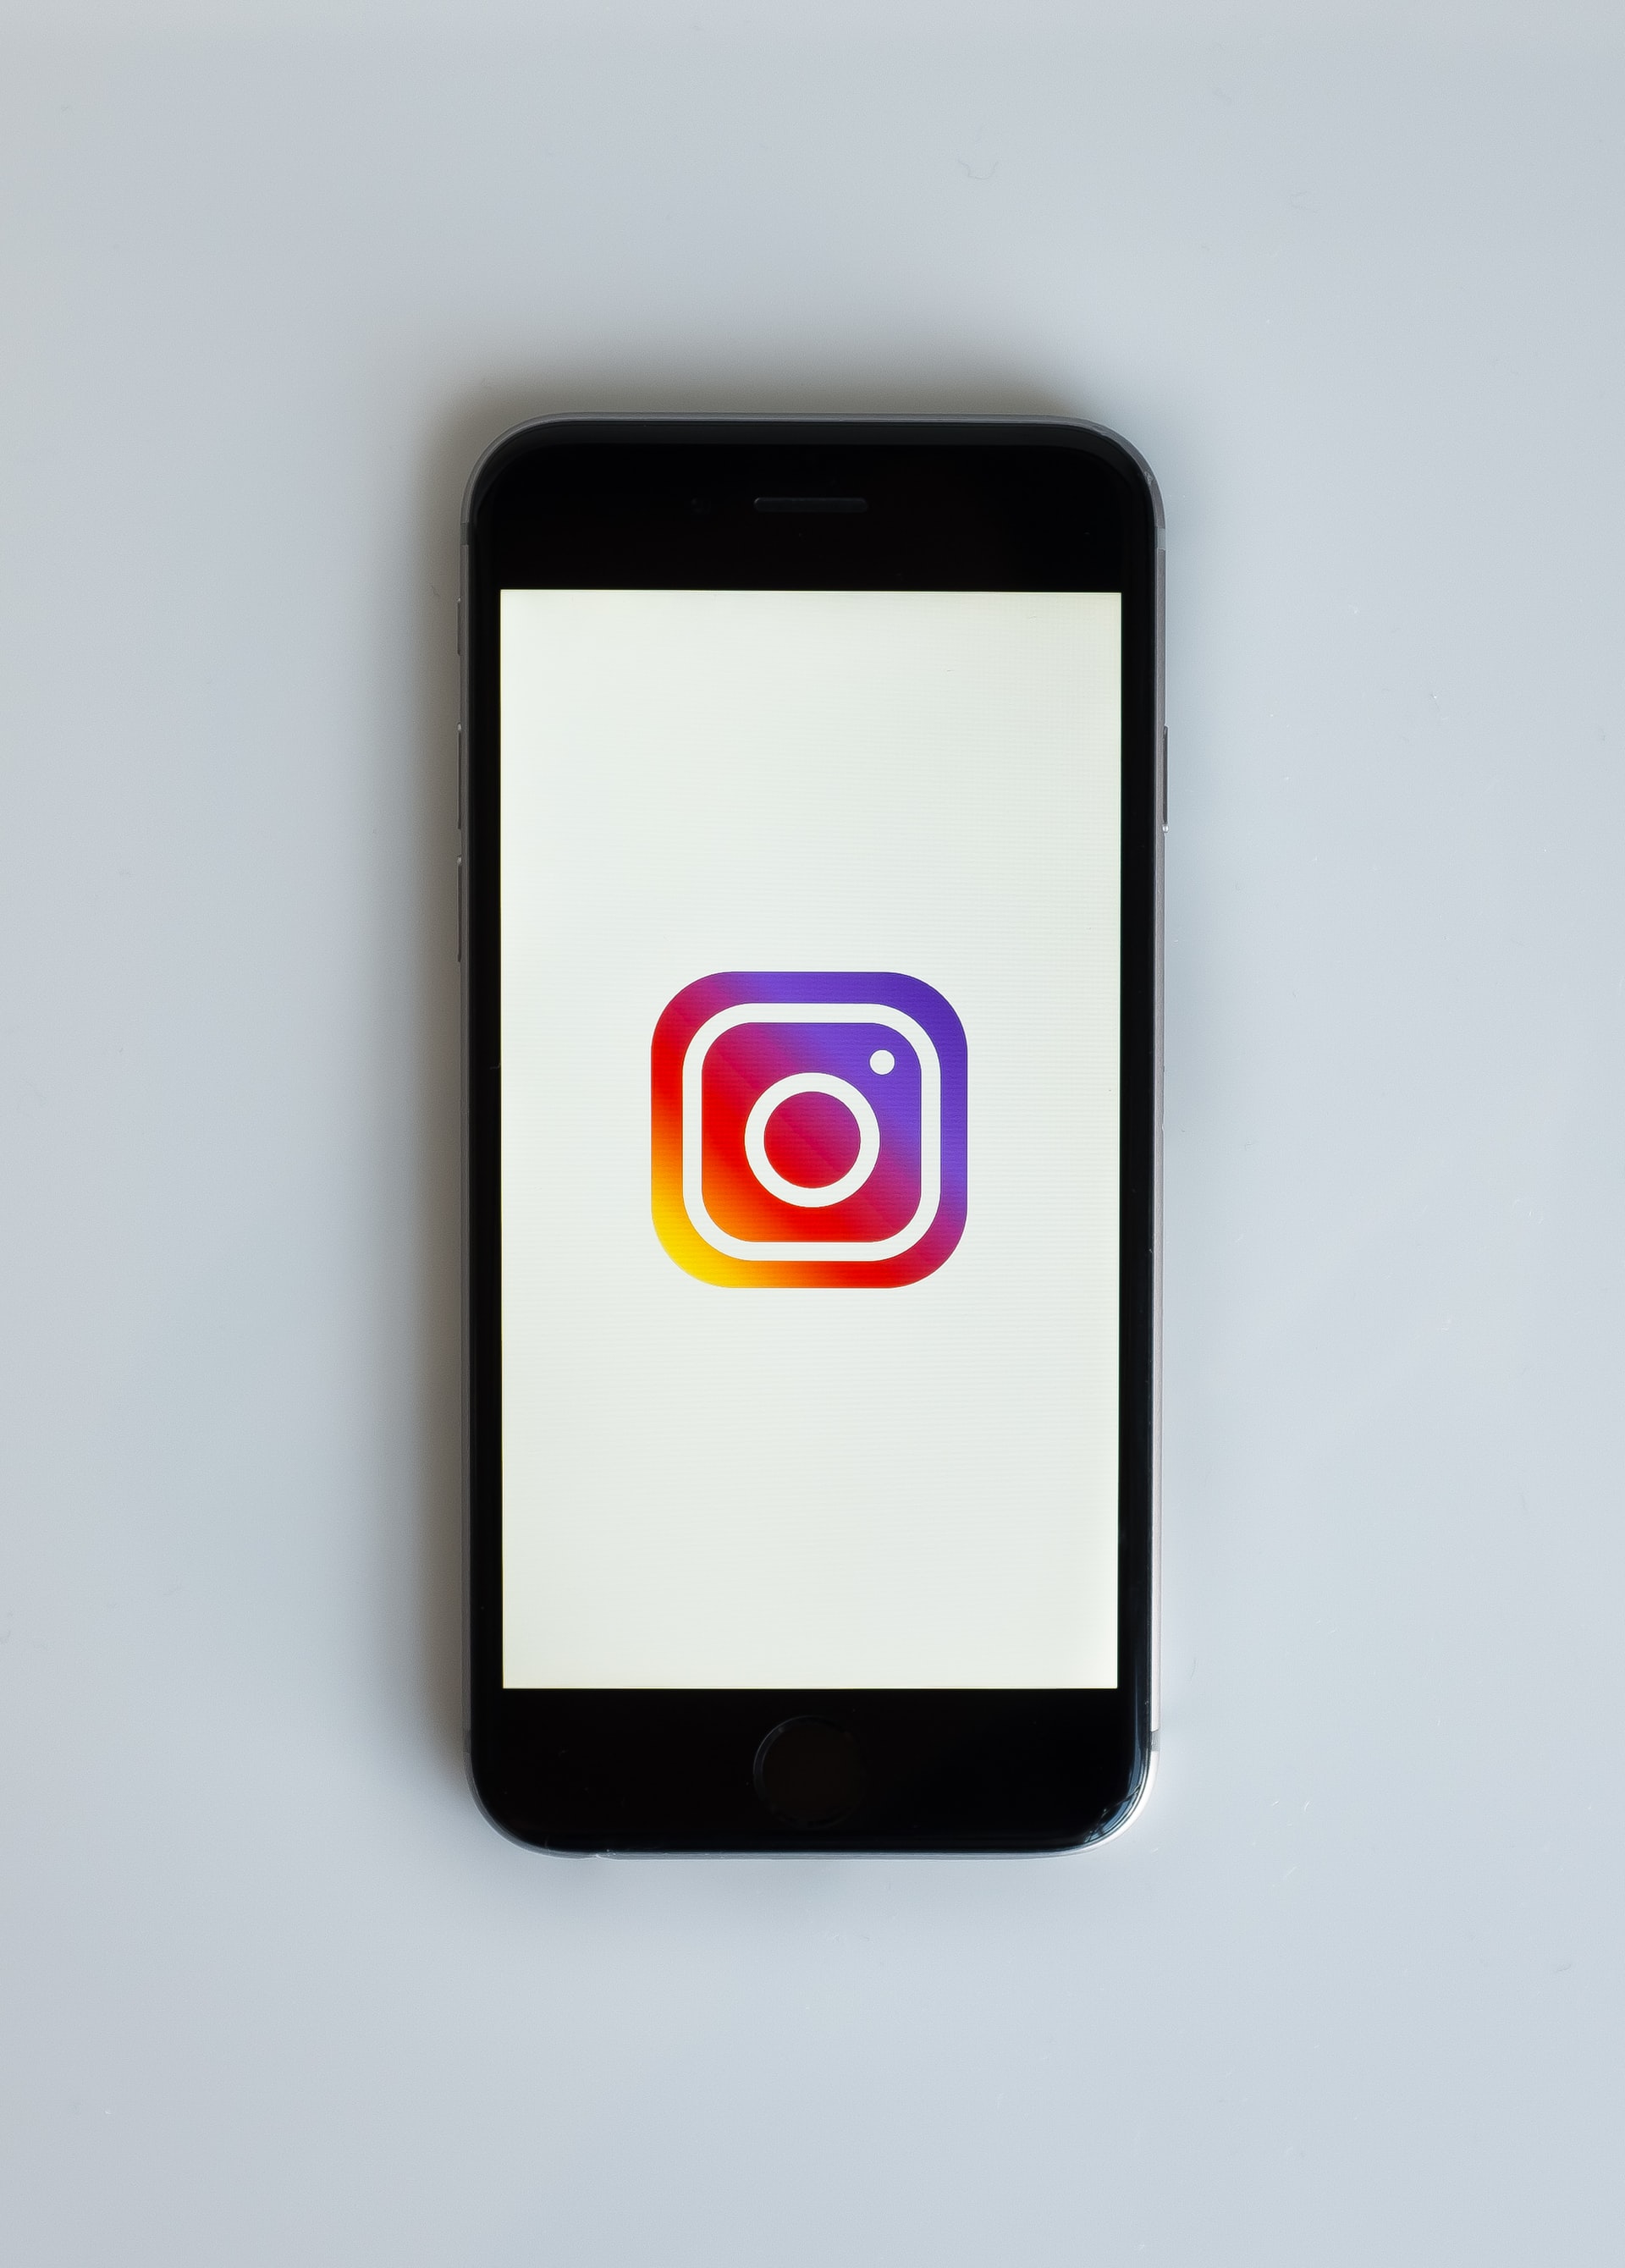 Instagram efektleri neden çalışmıyor, açılmıyor? Instagram sorun mu var 26 Mayıs 2022 Perşembe?